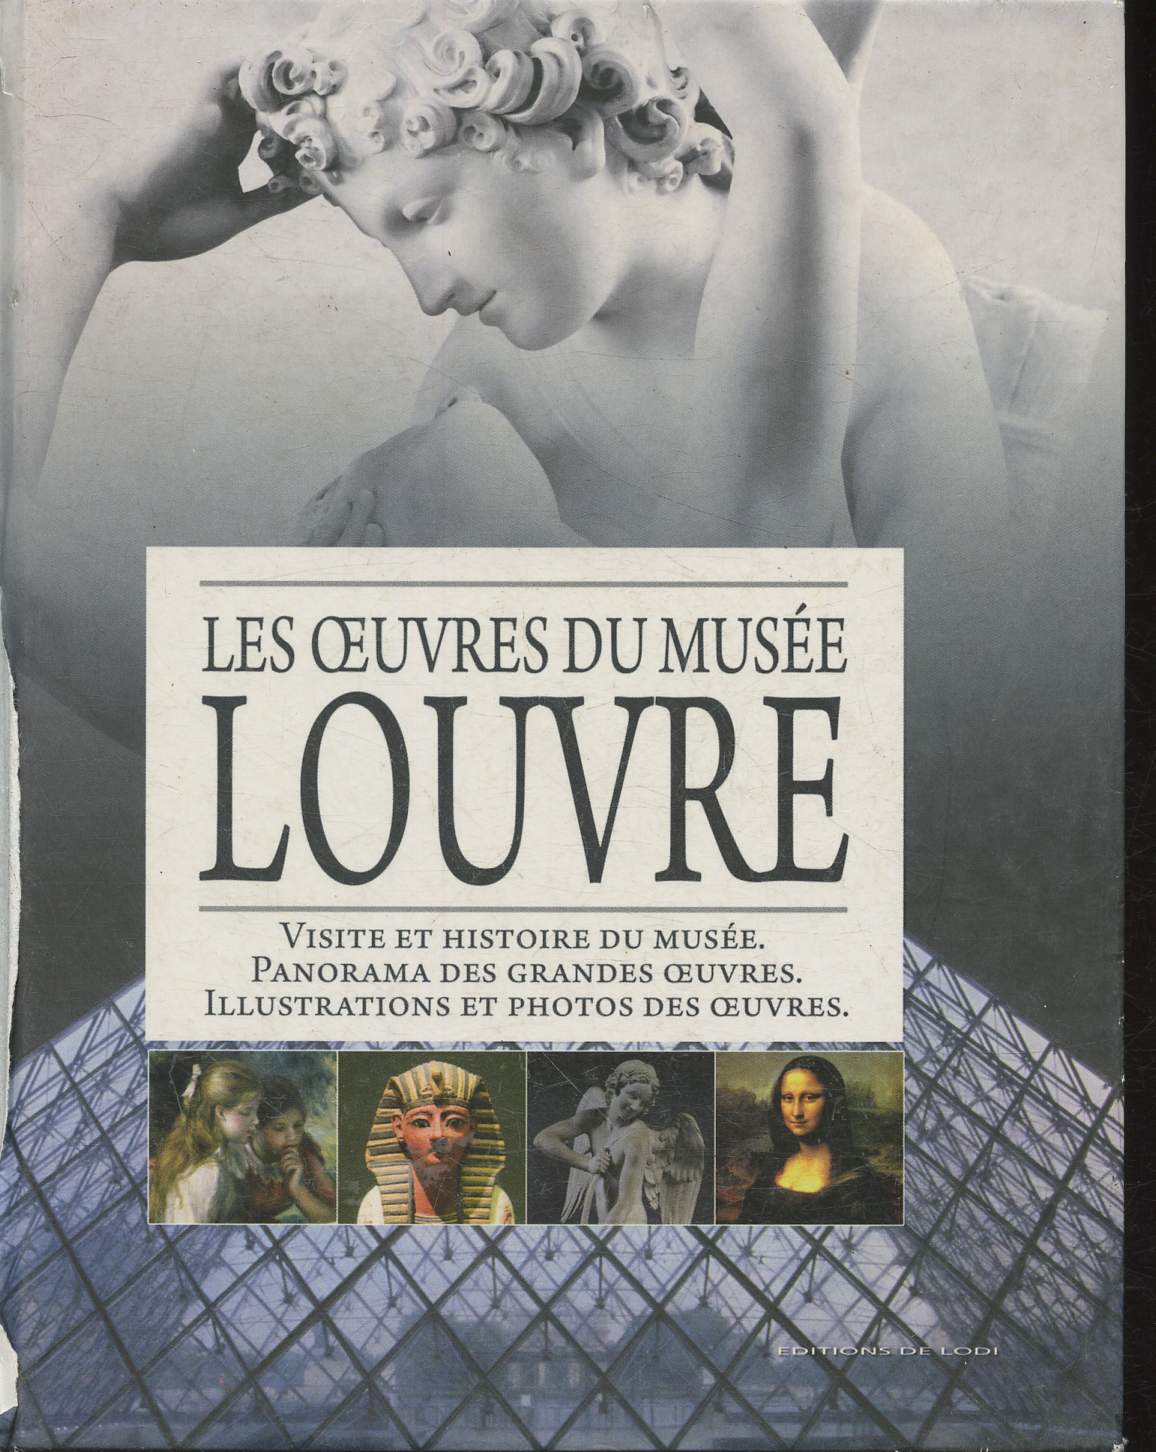 Les oeuvres du muse du Louvre- Visite et Histoire du Muse, Panorama des grandes oeuvres, Illustrations et photos des oeuvres